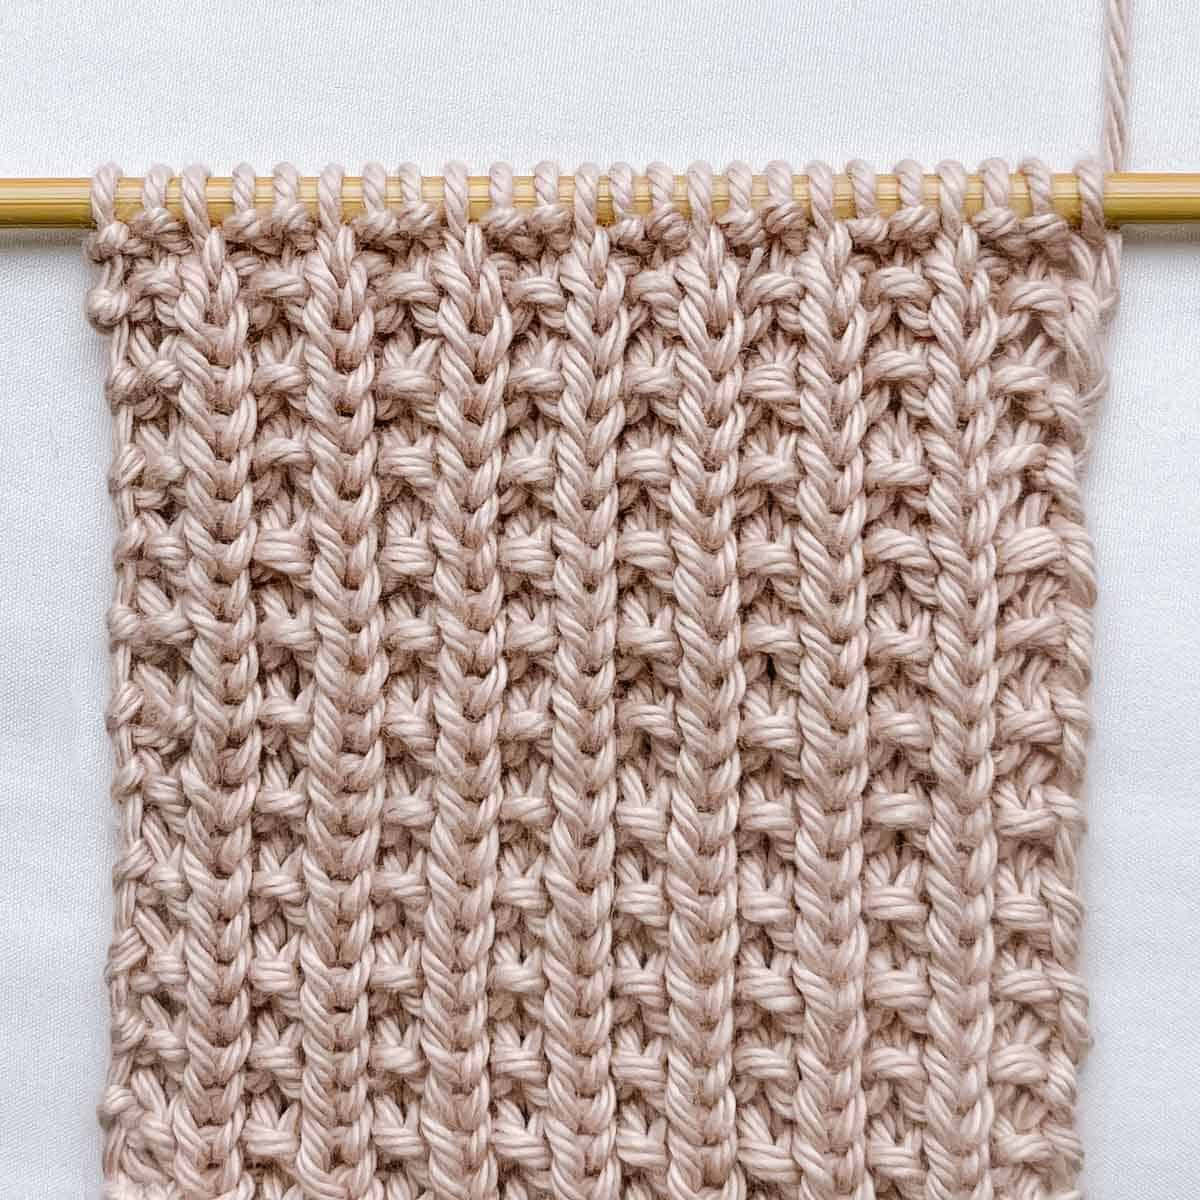 Knit ribbing stitch on a wooden knitting needle.